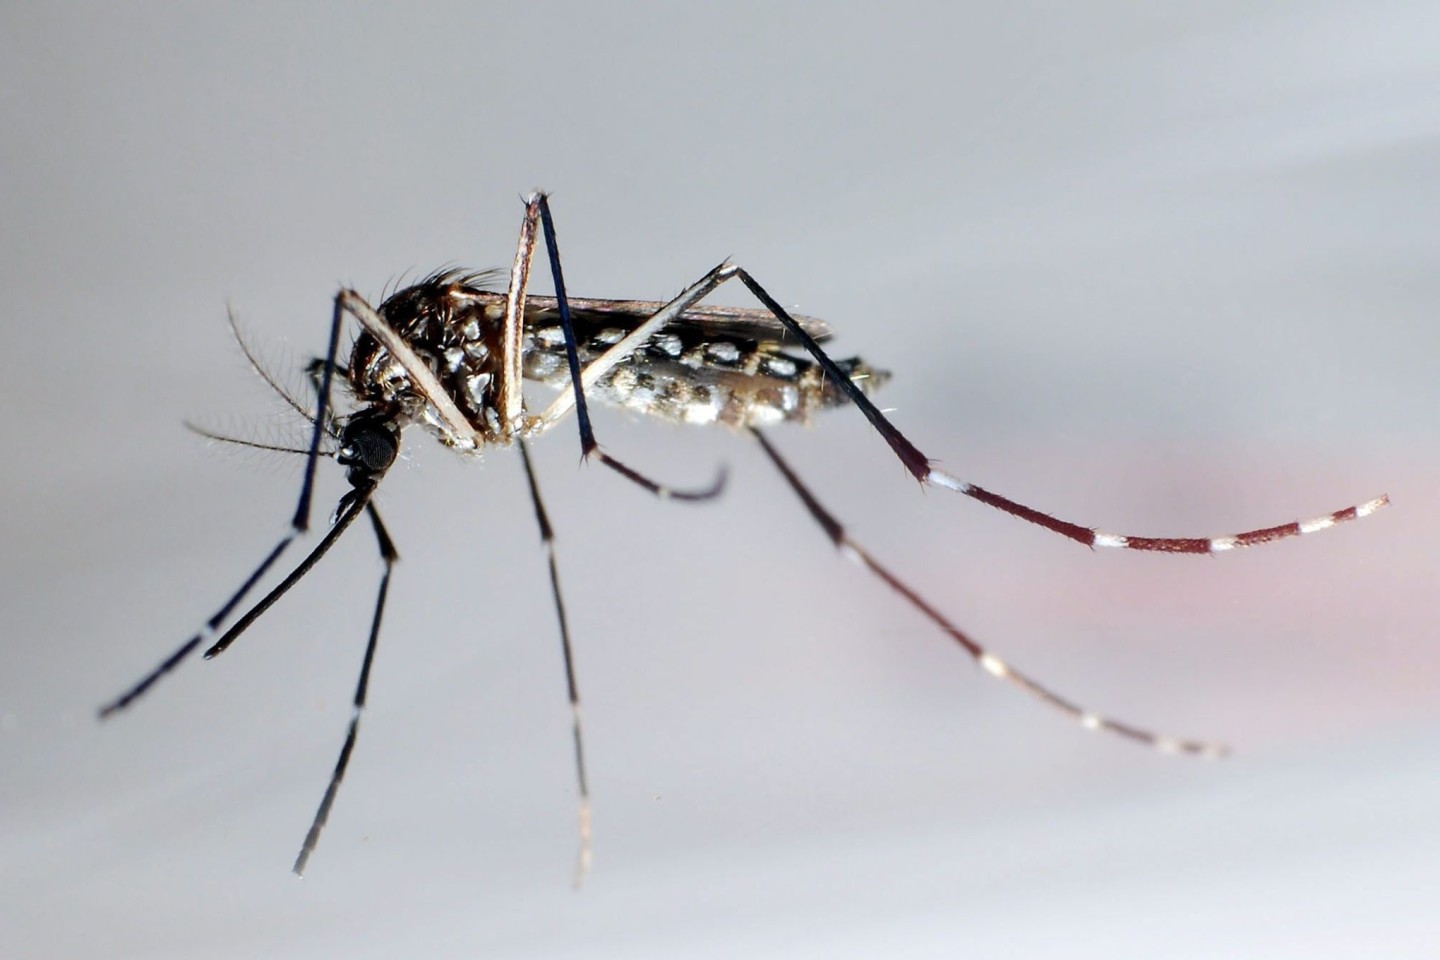 Aedes-Mücken übertragen Viren, die in manchen Fällen sogar zum Tod führen können.